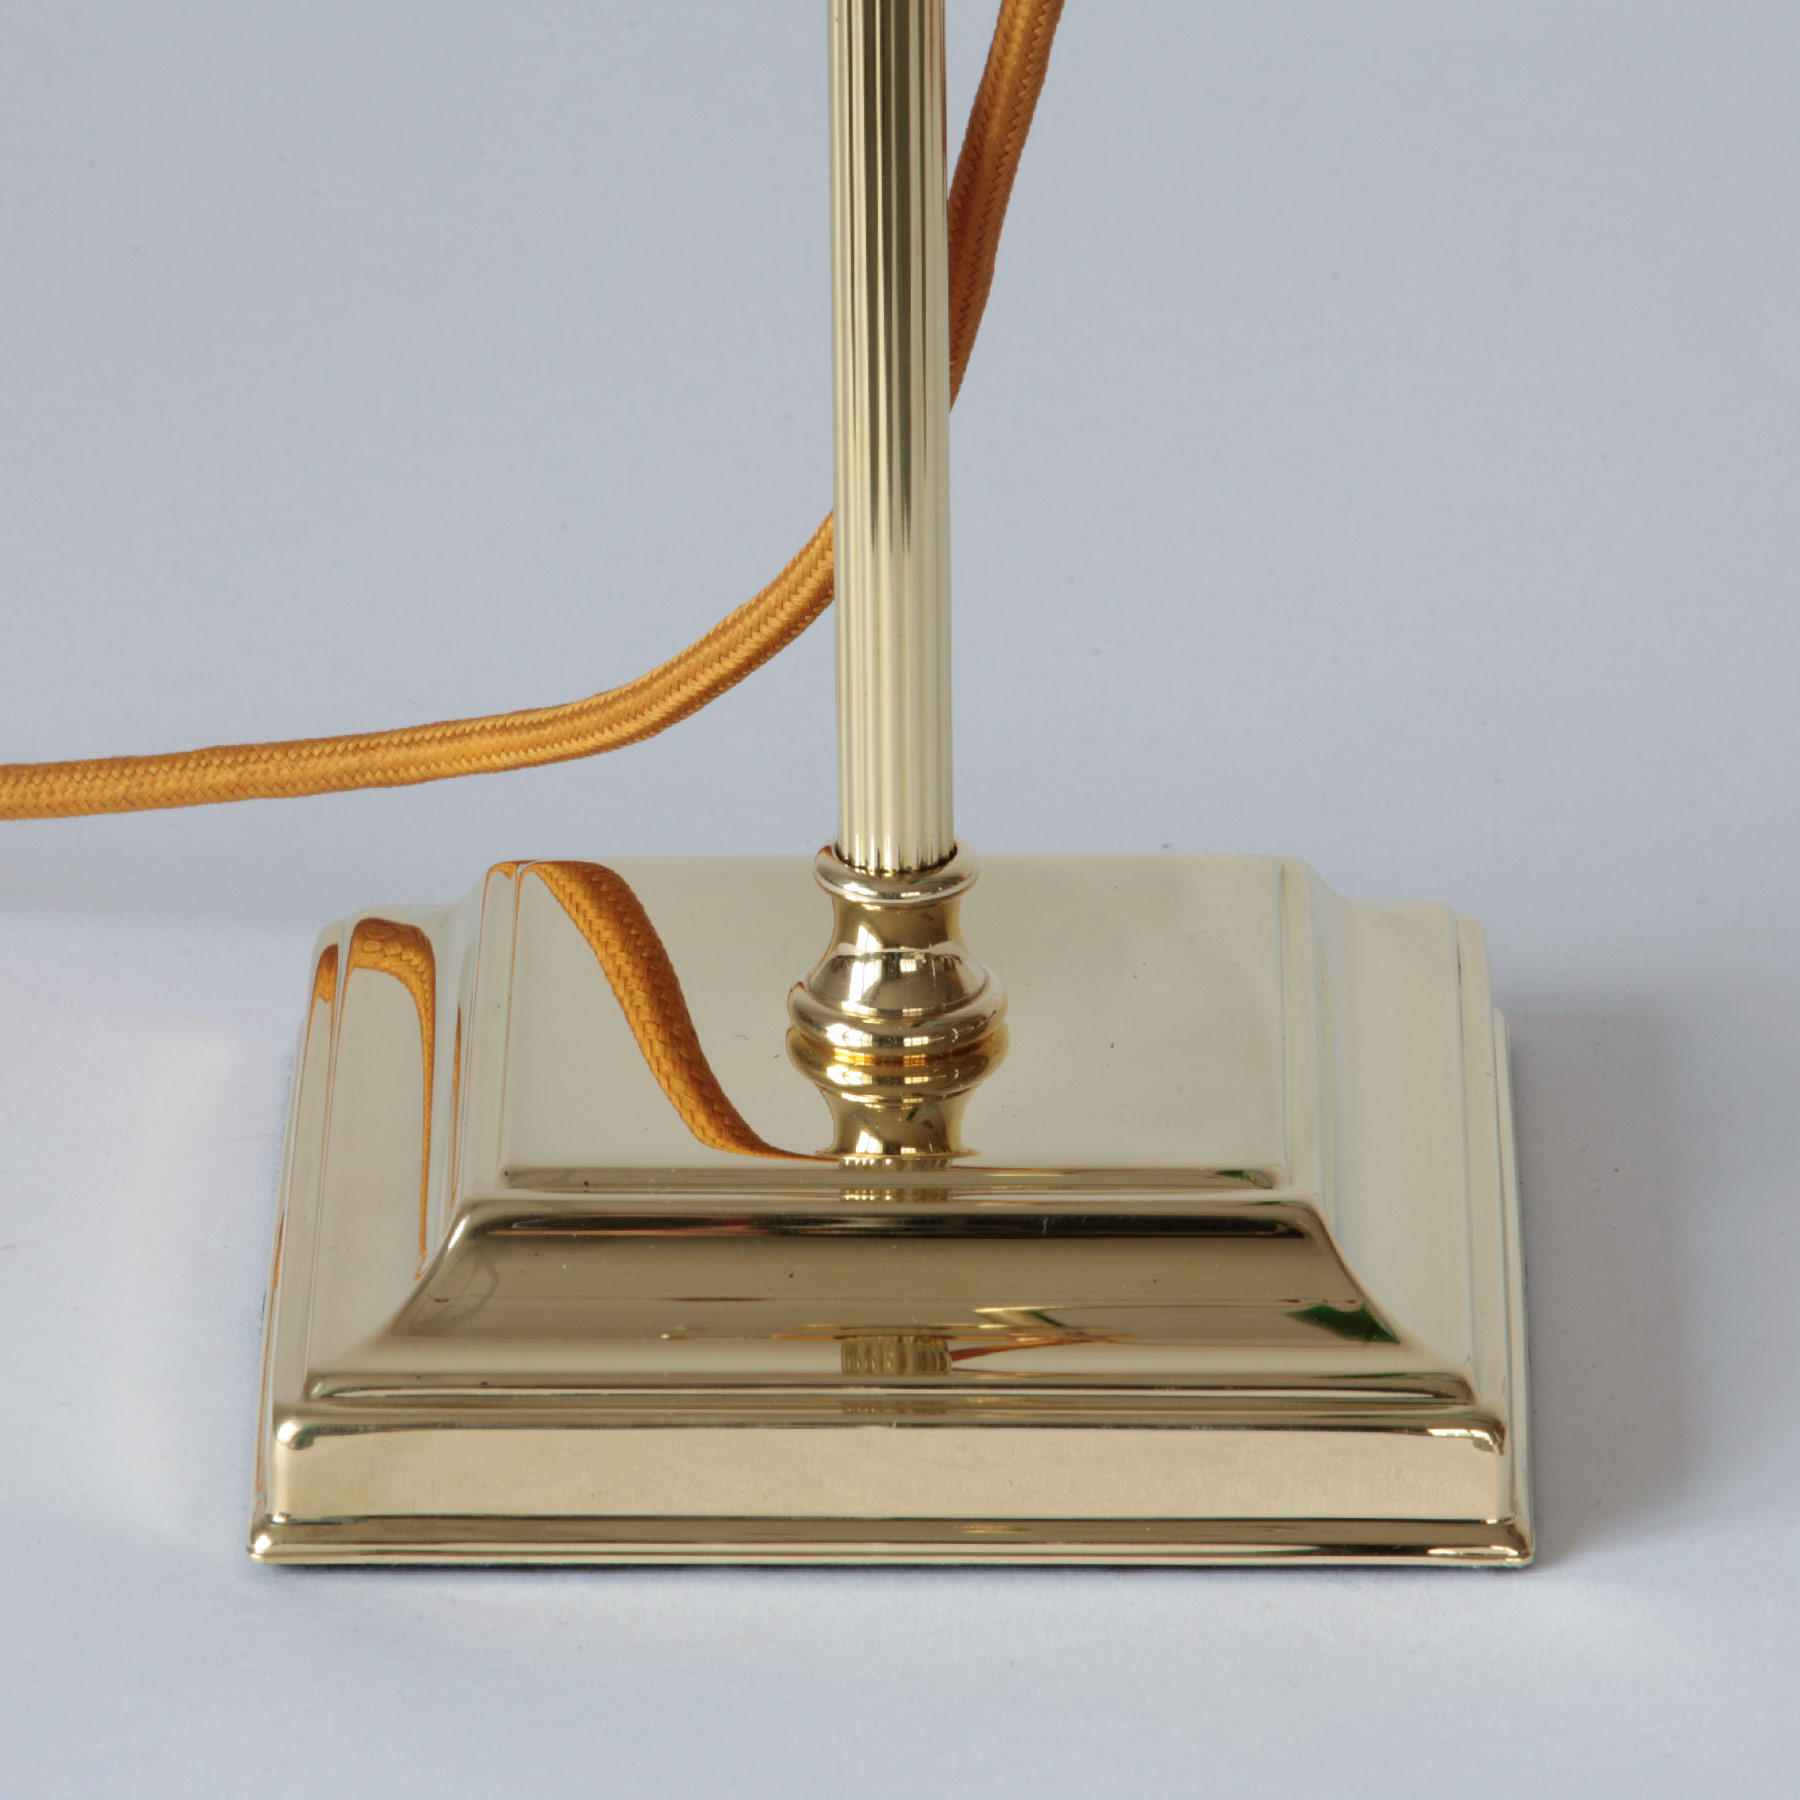 Banker’s Lamp – klassische Schreibtischleuchte mit Glasschirm: Messing poliert und lackiert